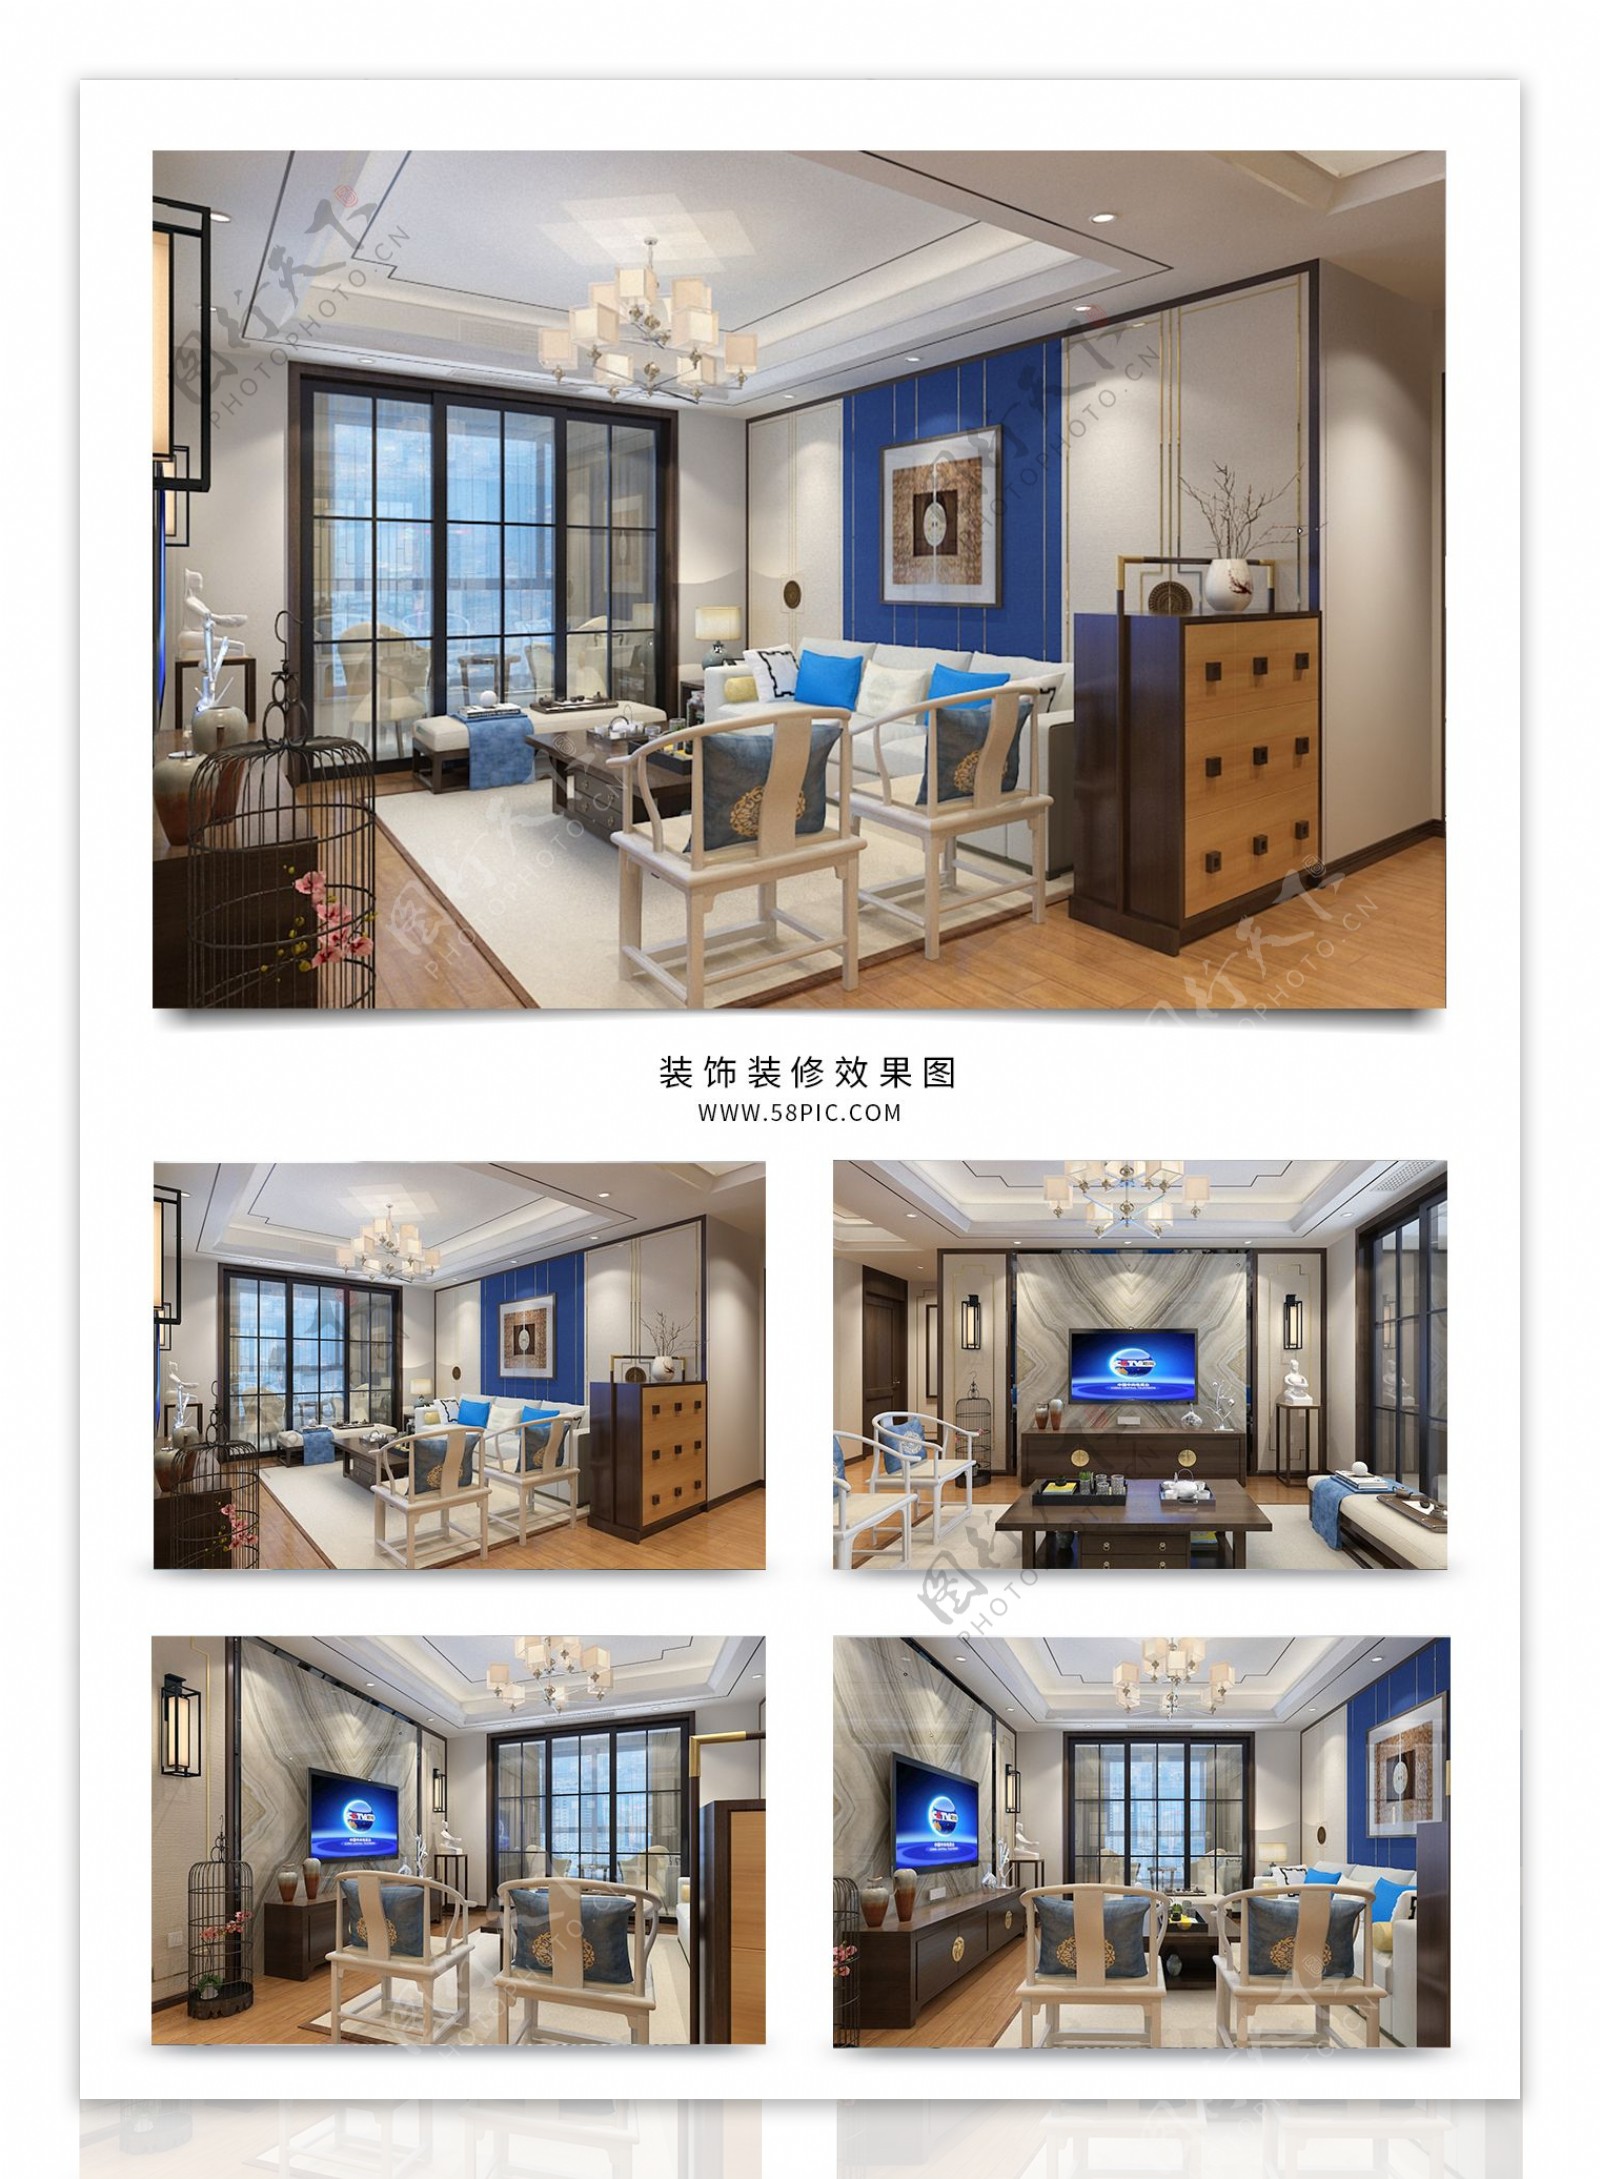 现代风格客厅空间蓝色中式效果图